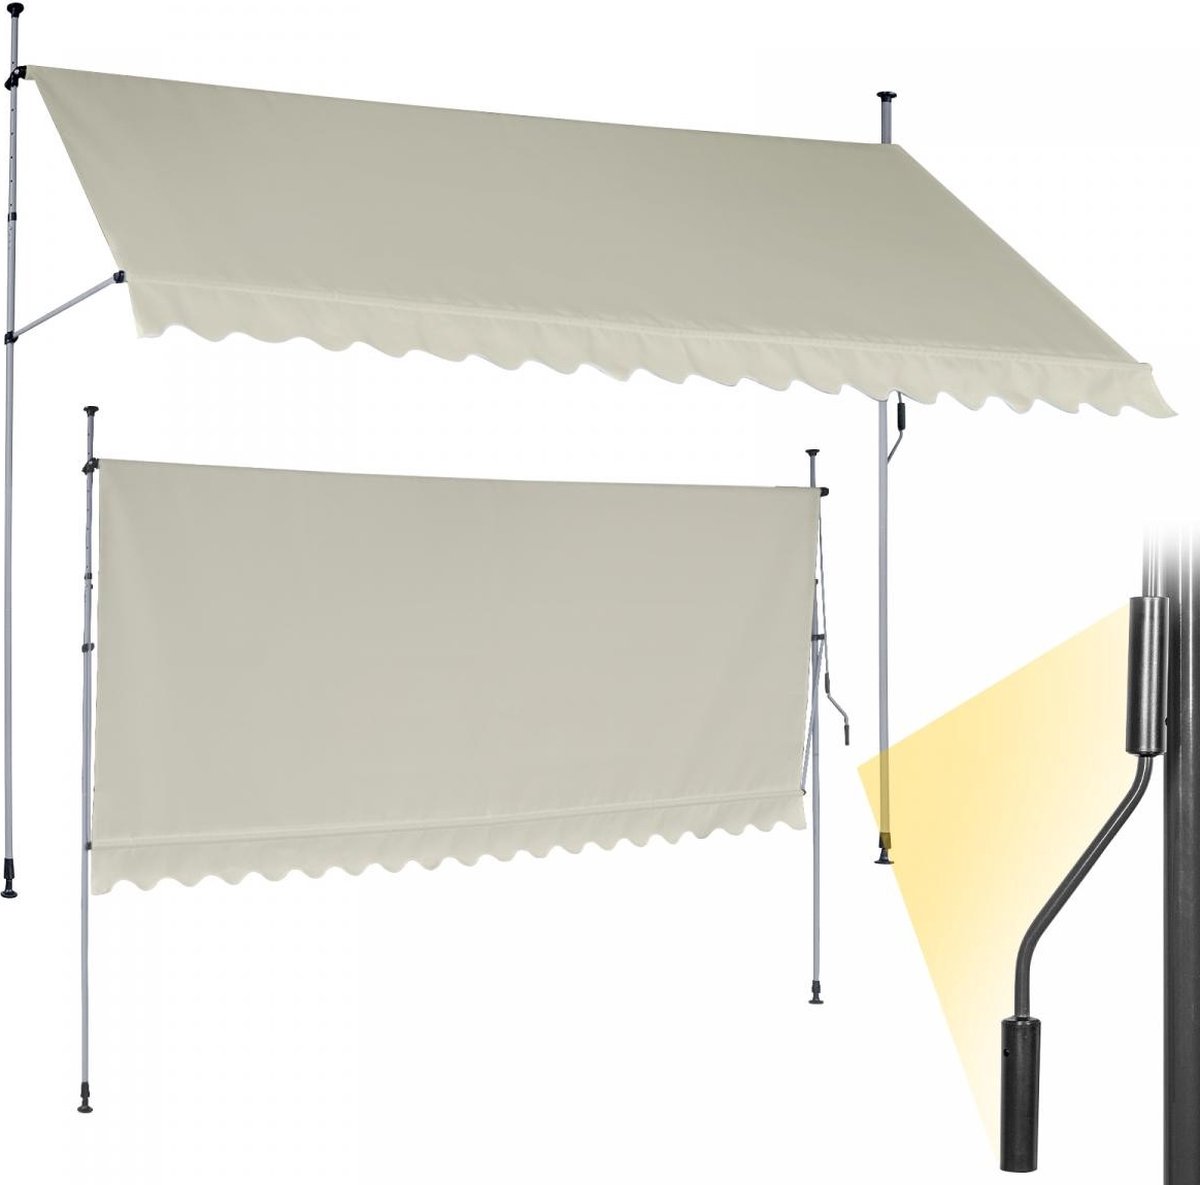 GoodVibes - In Hoogte Verstelbare Luifel met UV-bescherming en Slinger - 300x80 cm - Waterafstotend voor op het Balkon of Terras - Zonbescherming - Zonnescherm - Terrasluifel - Beige